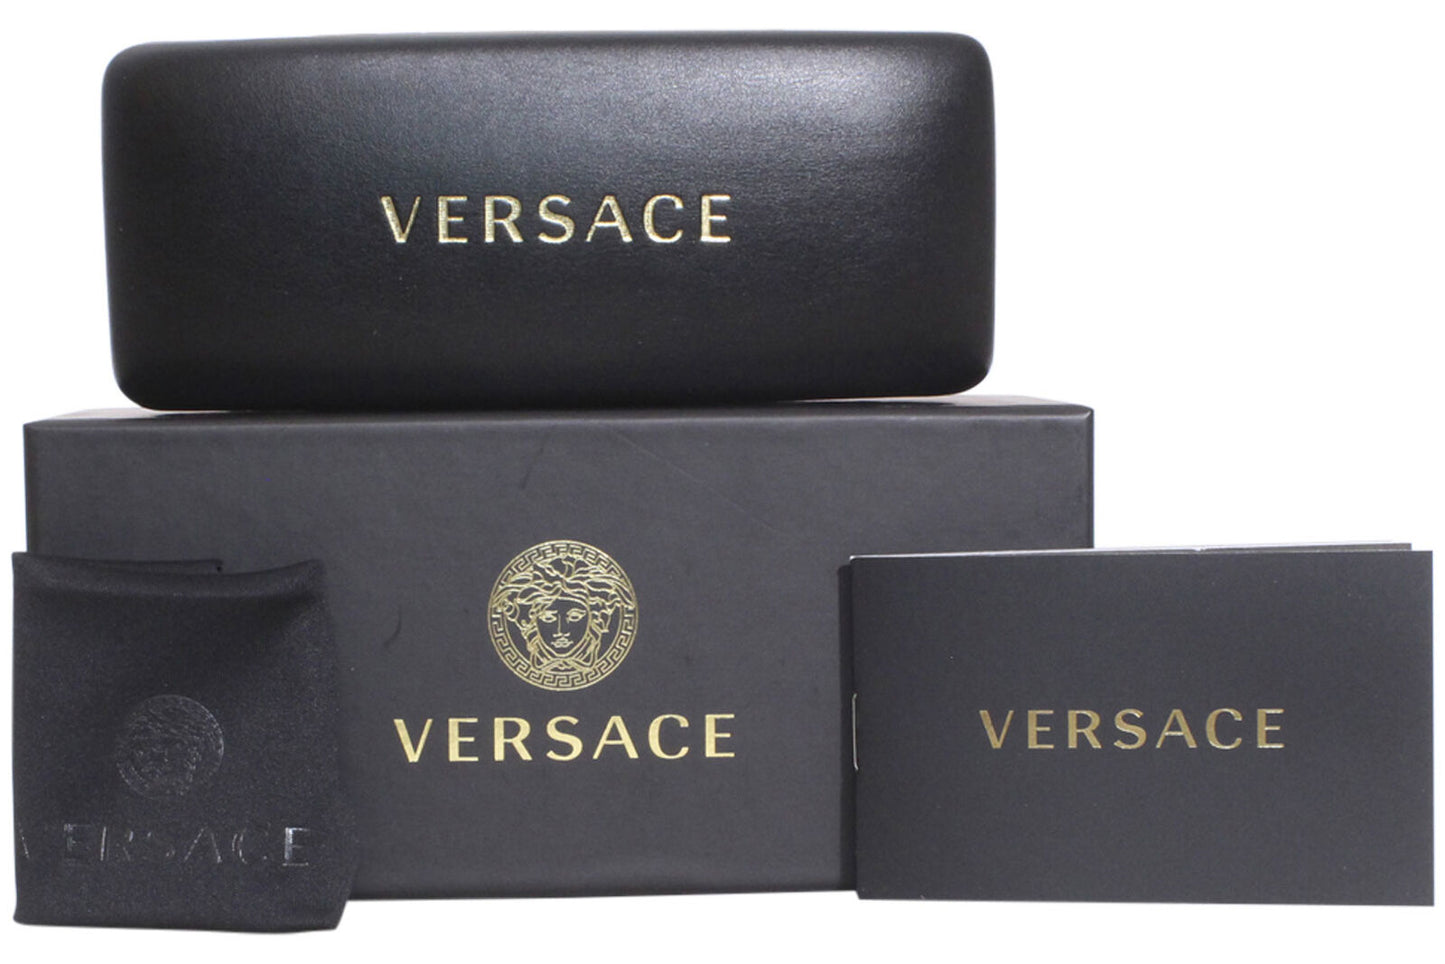 Versace 0VE3286-5332 54mm New Eyeglasses